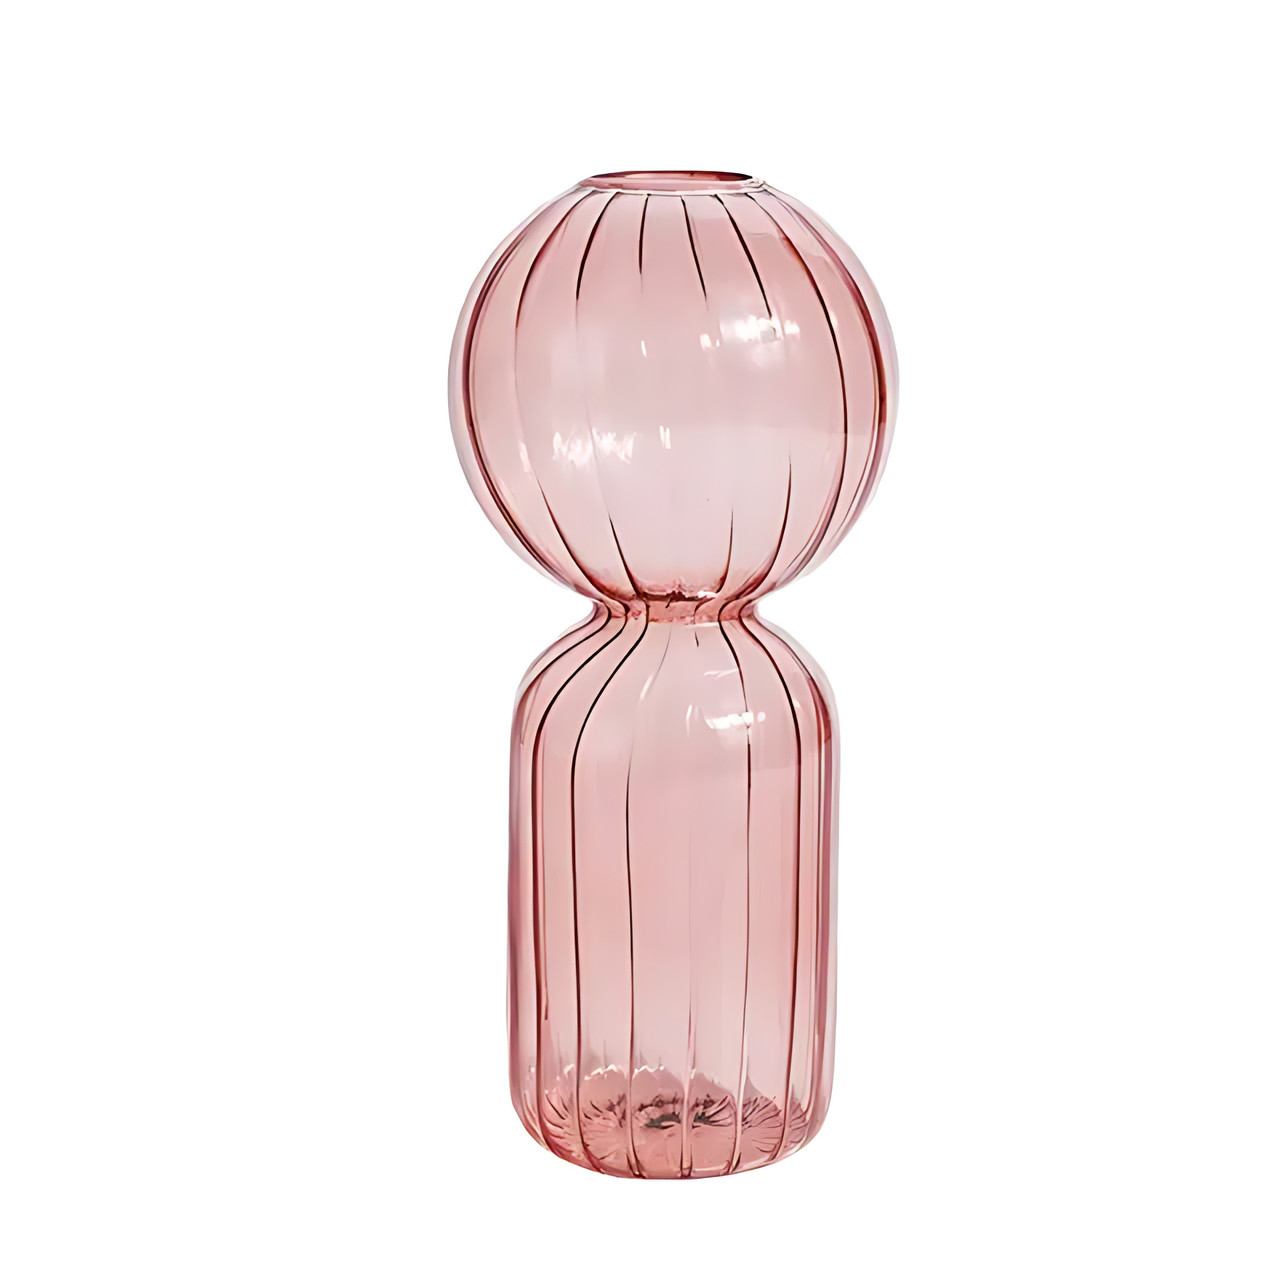 Ваза для квітів REMY-DEСOR скляна декоративна ваза Лімо рожевого кольору висота 18 см для декору будинку